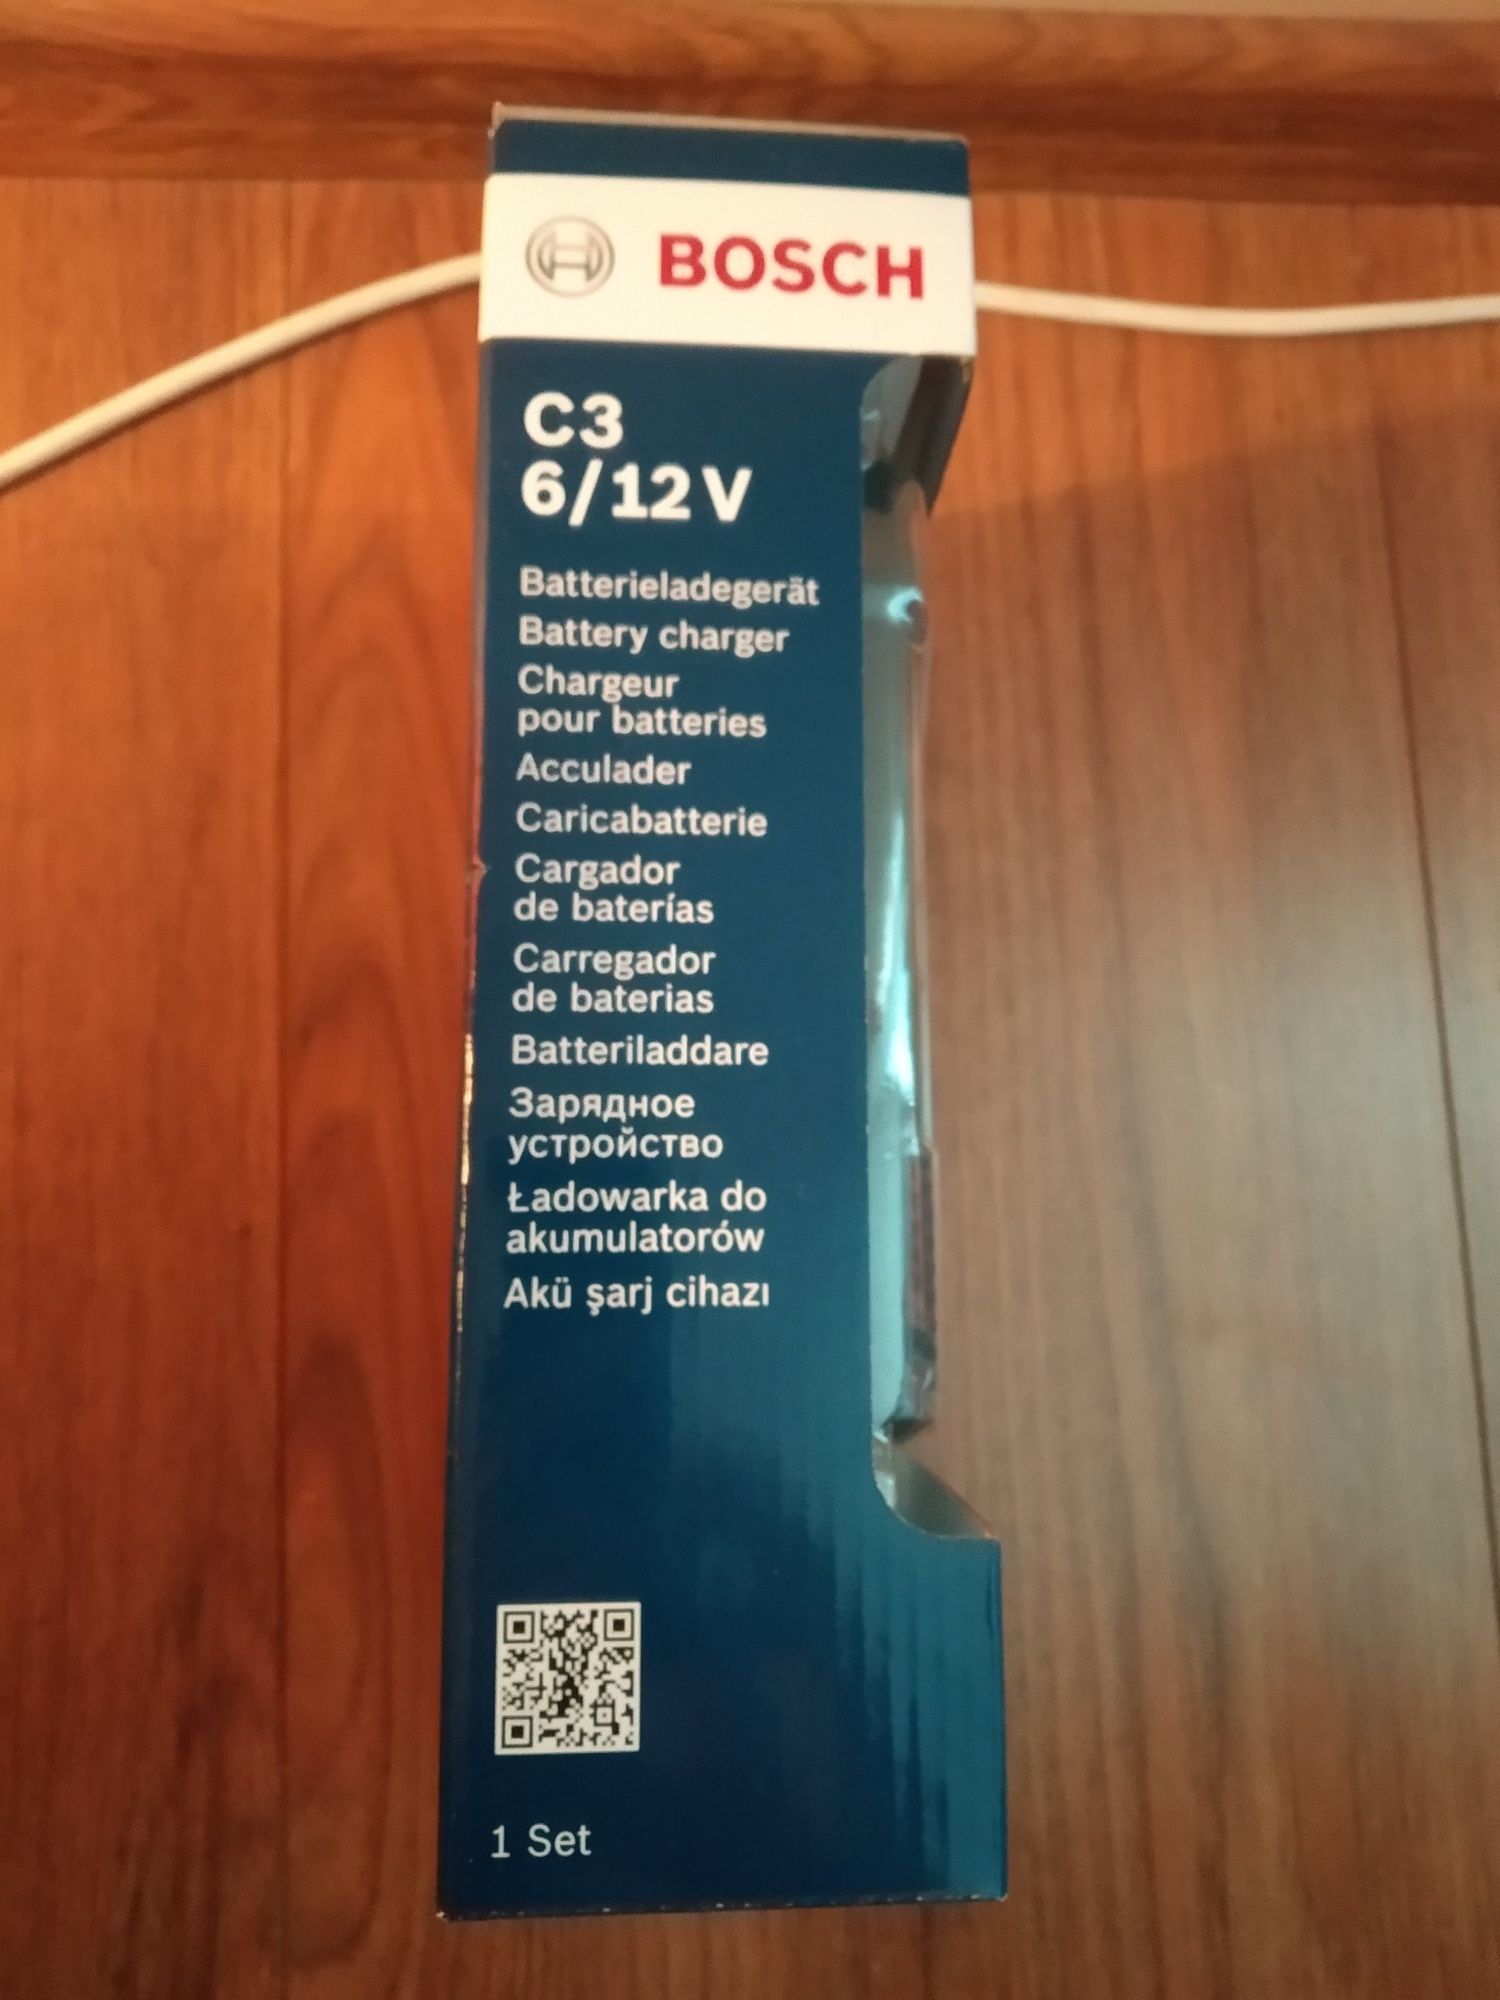 Зарядне устройство нове bosch c 3. В наявності